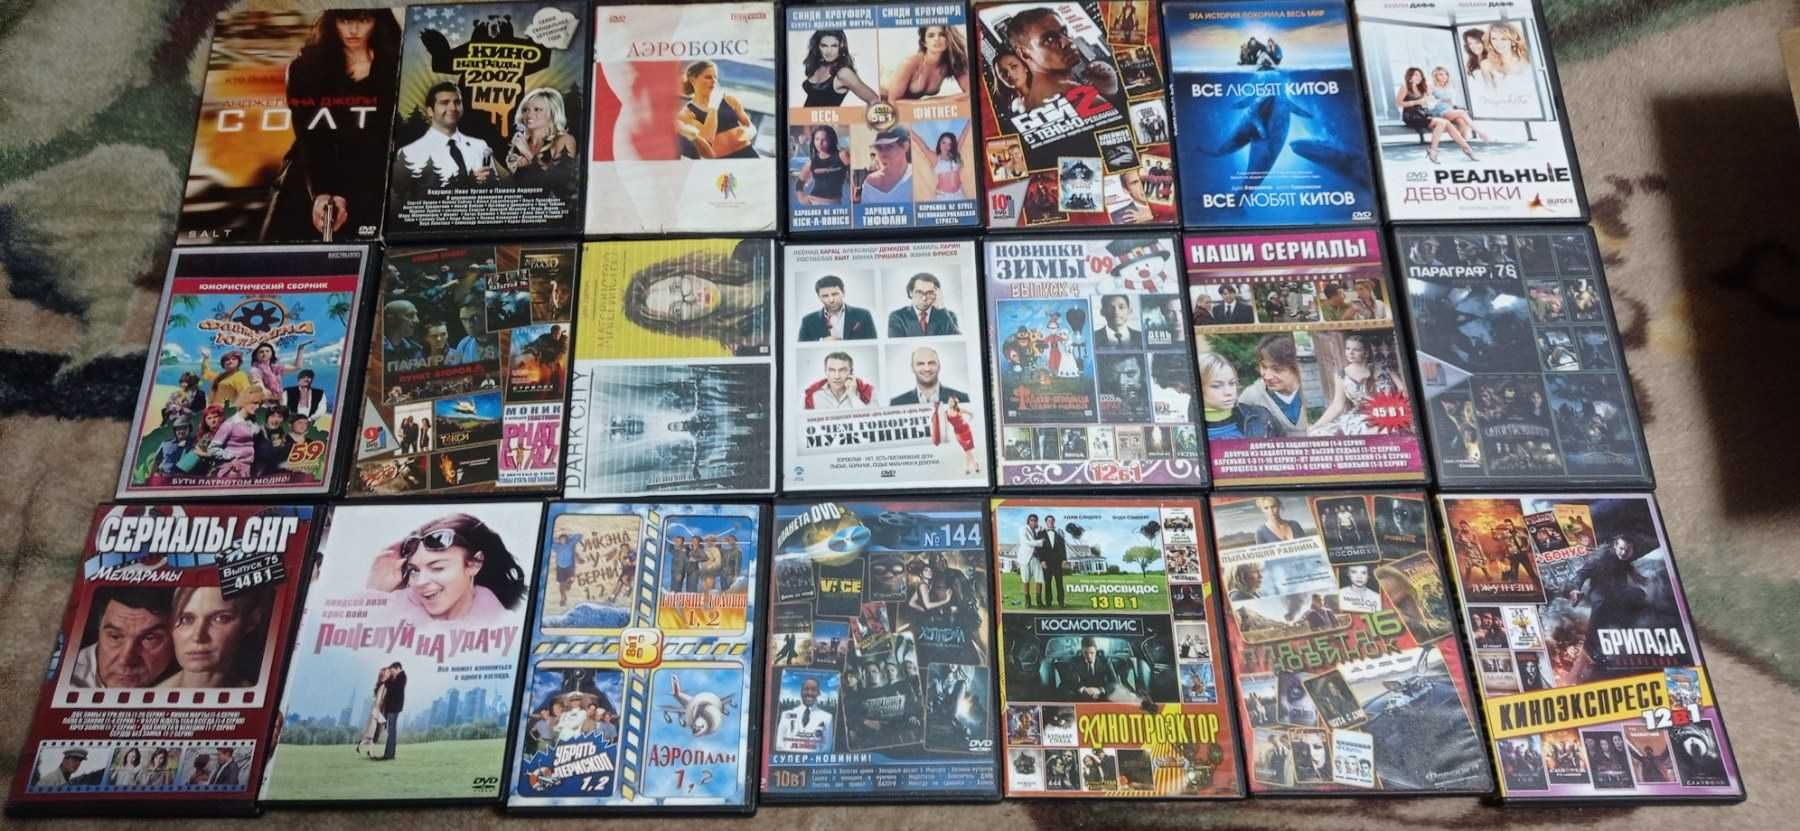 DVD диски фильмы кино